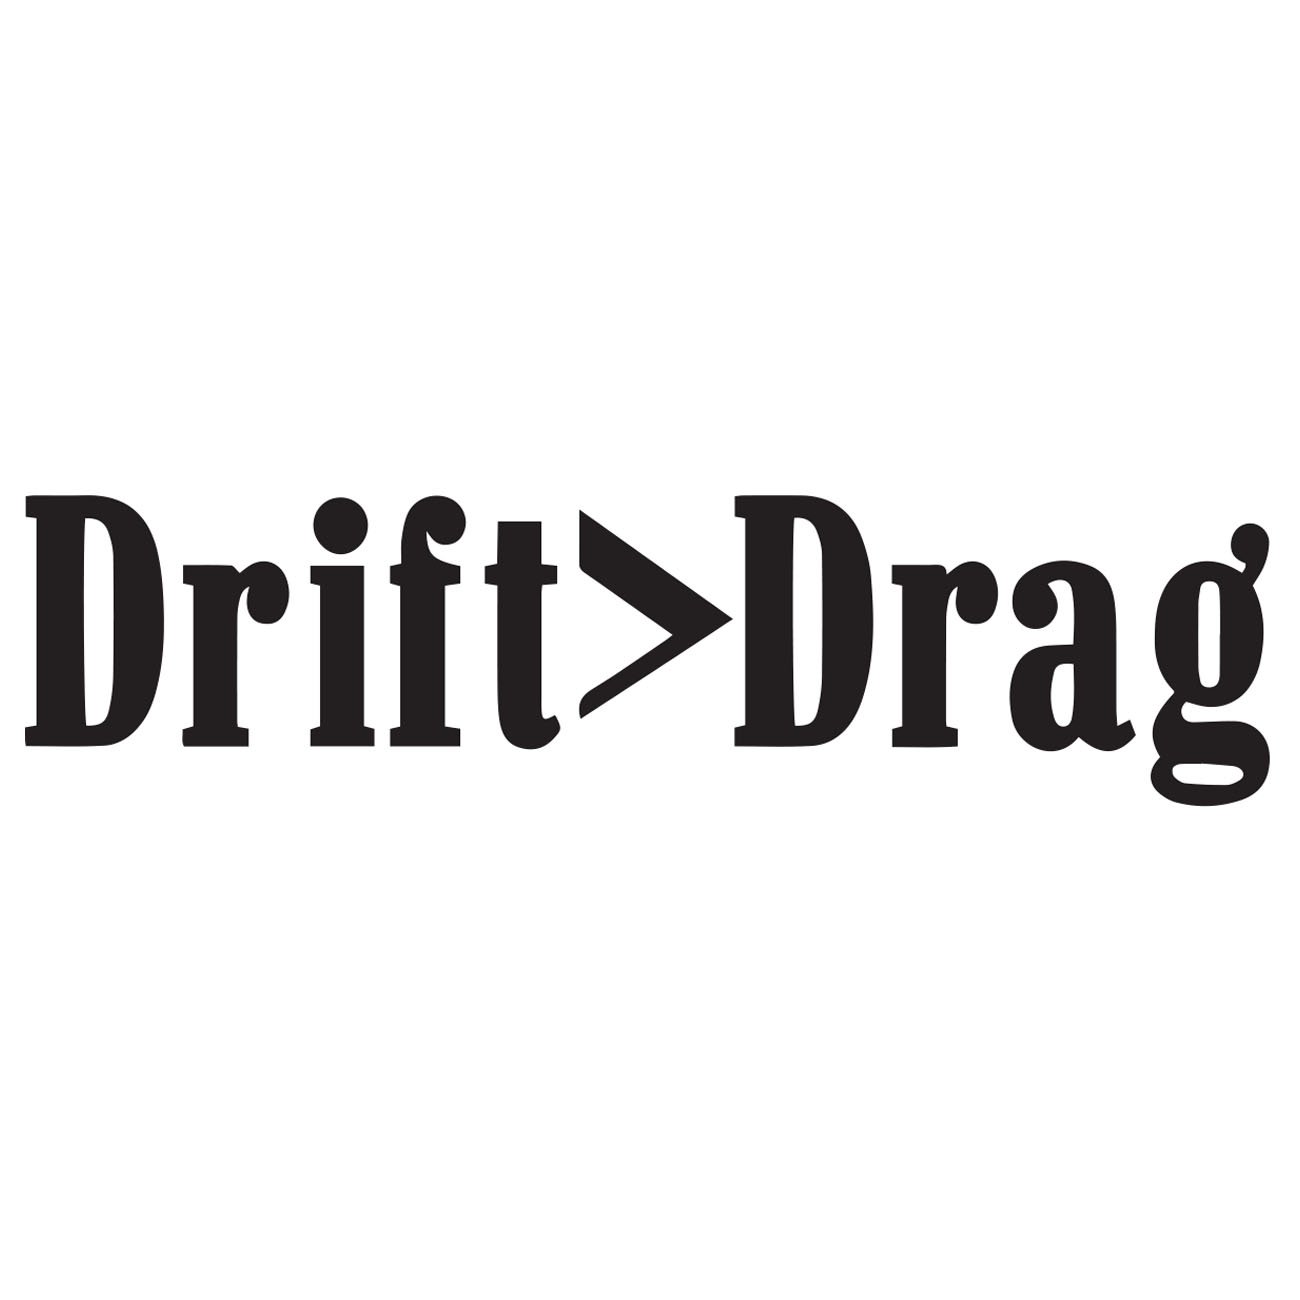 Drift > Drag